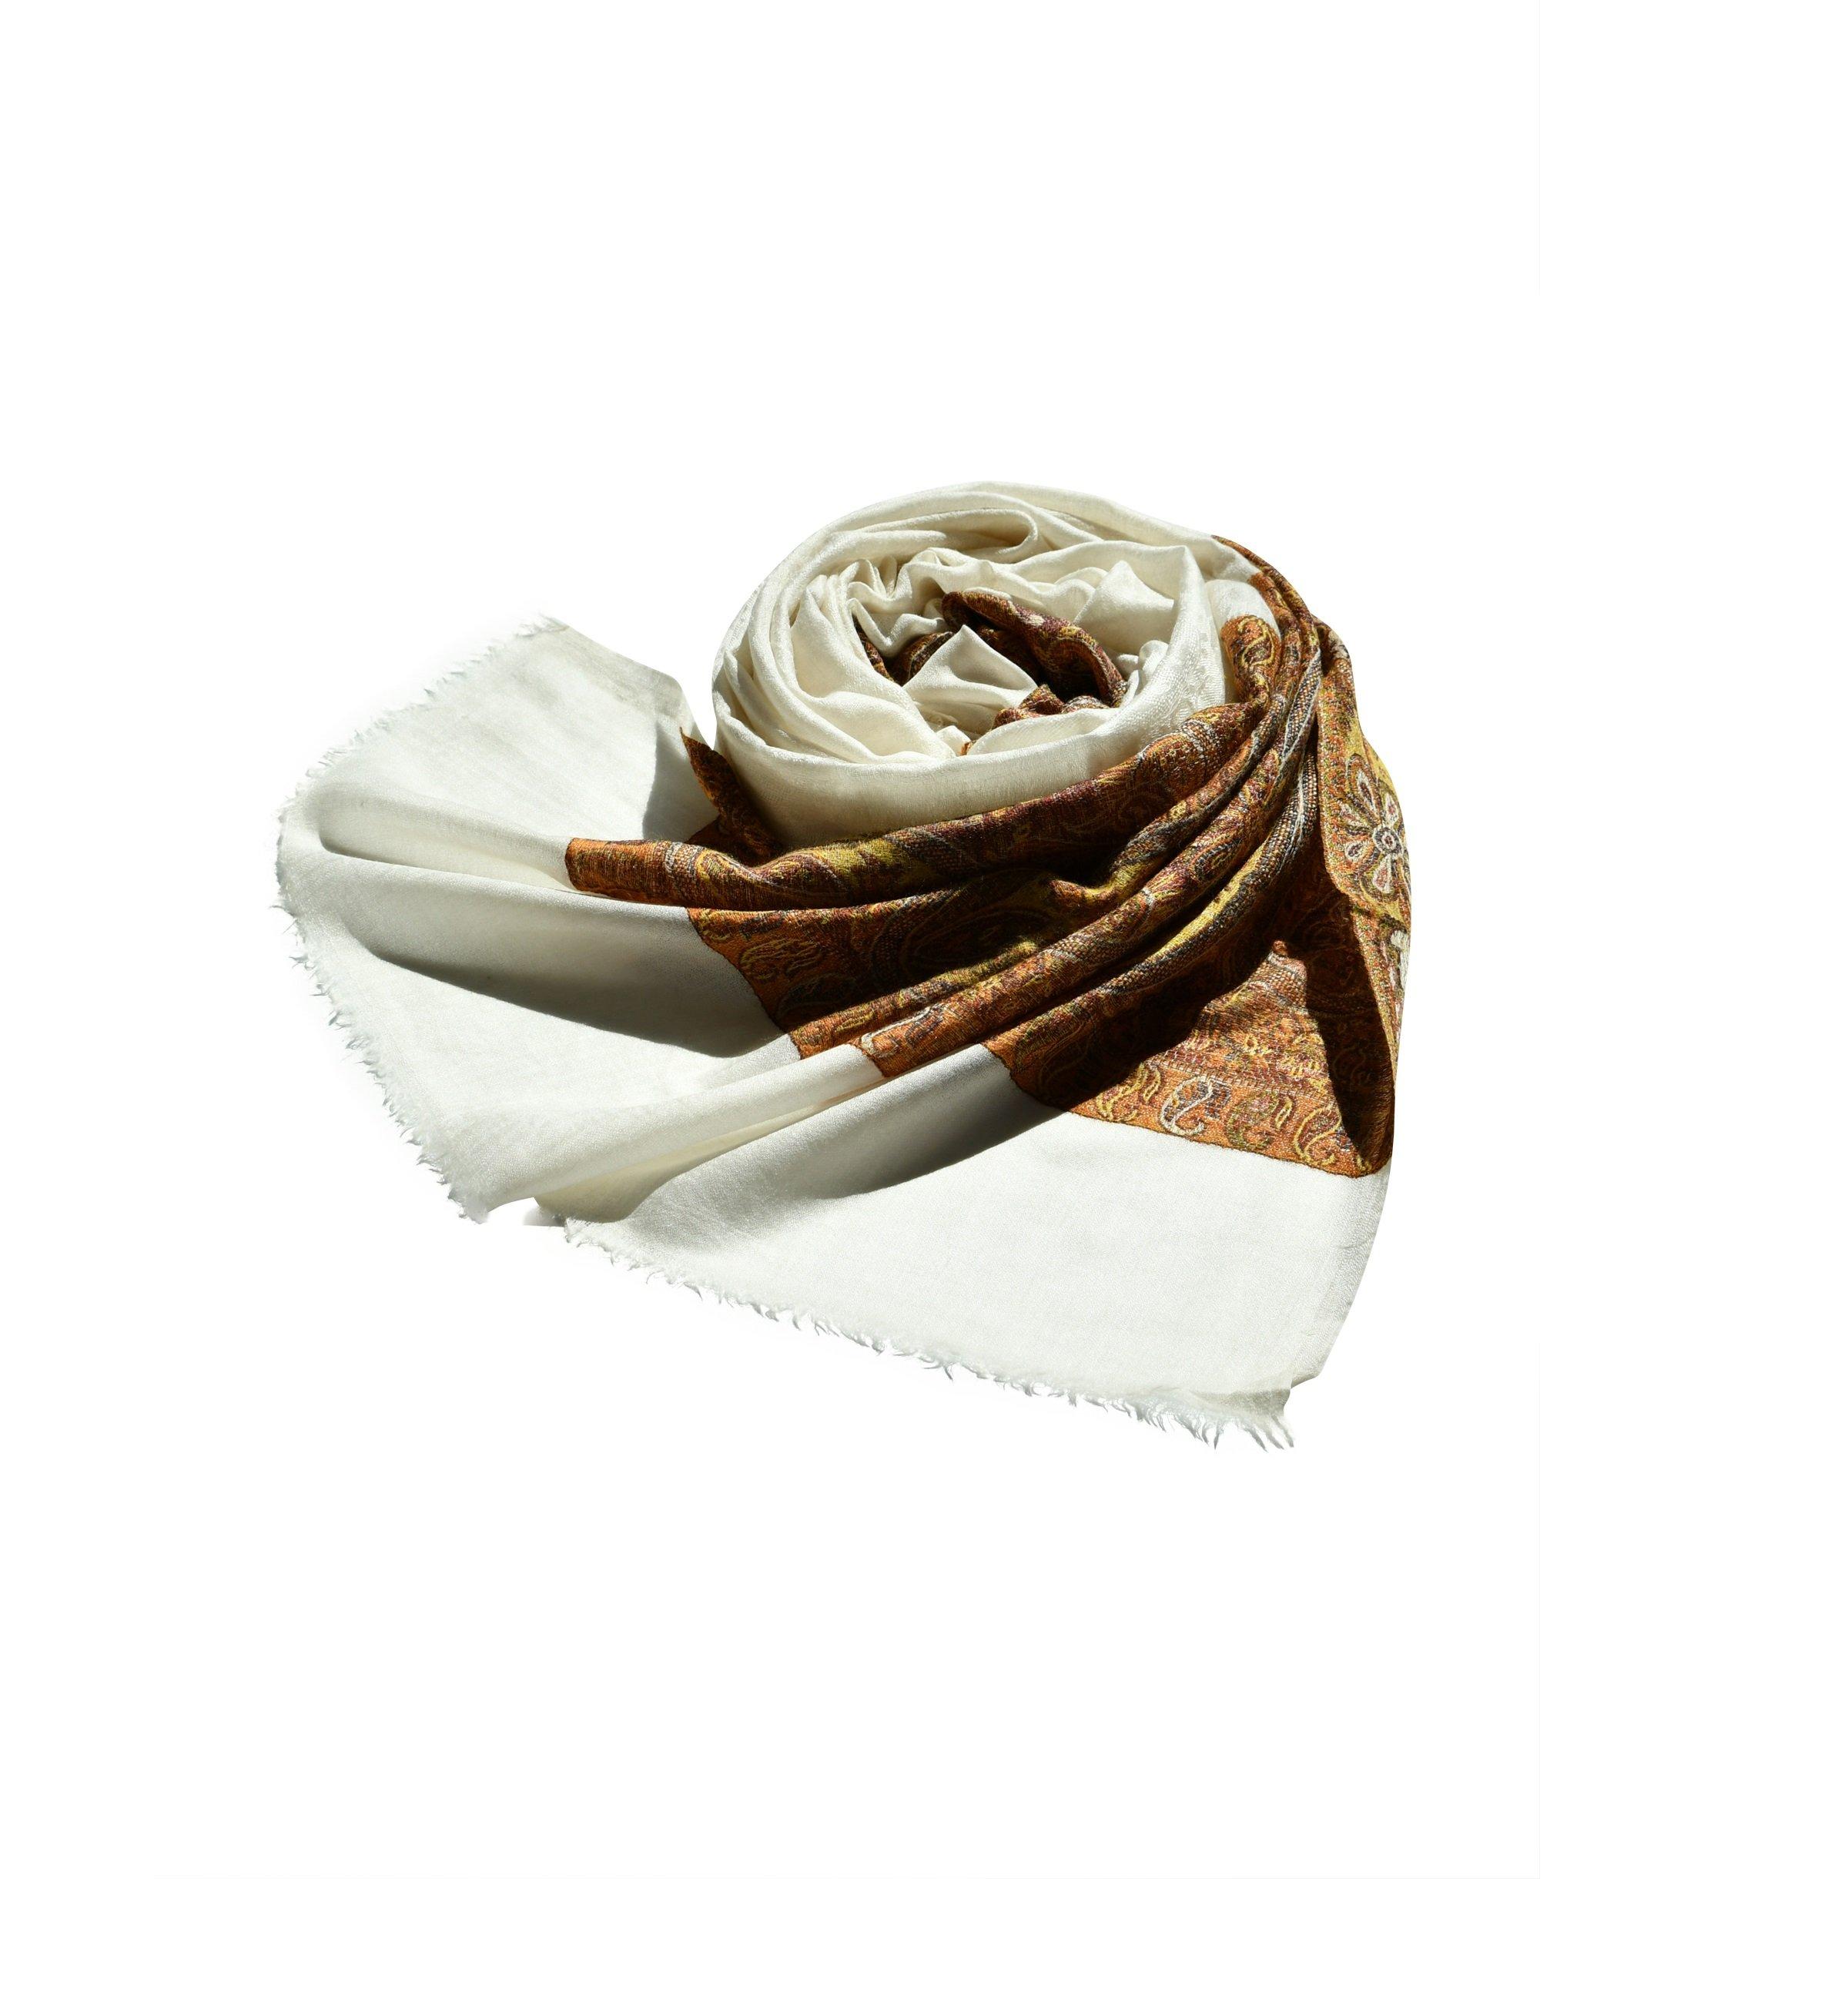 Шаль Kani Shawl — роскошный шерстяной аксессуар, непревзойденный стиль с тканым цветочным узором Blue Chilli, белый